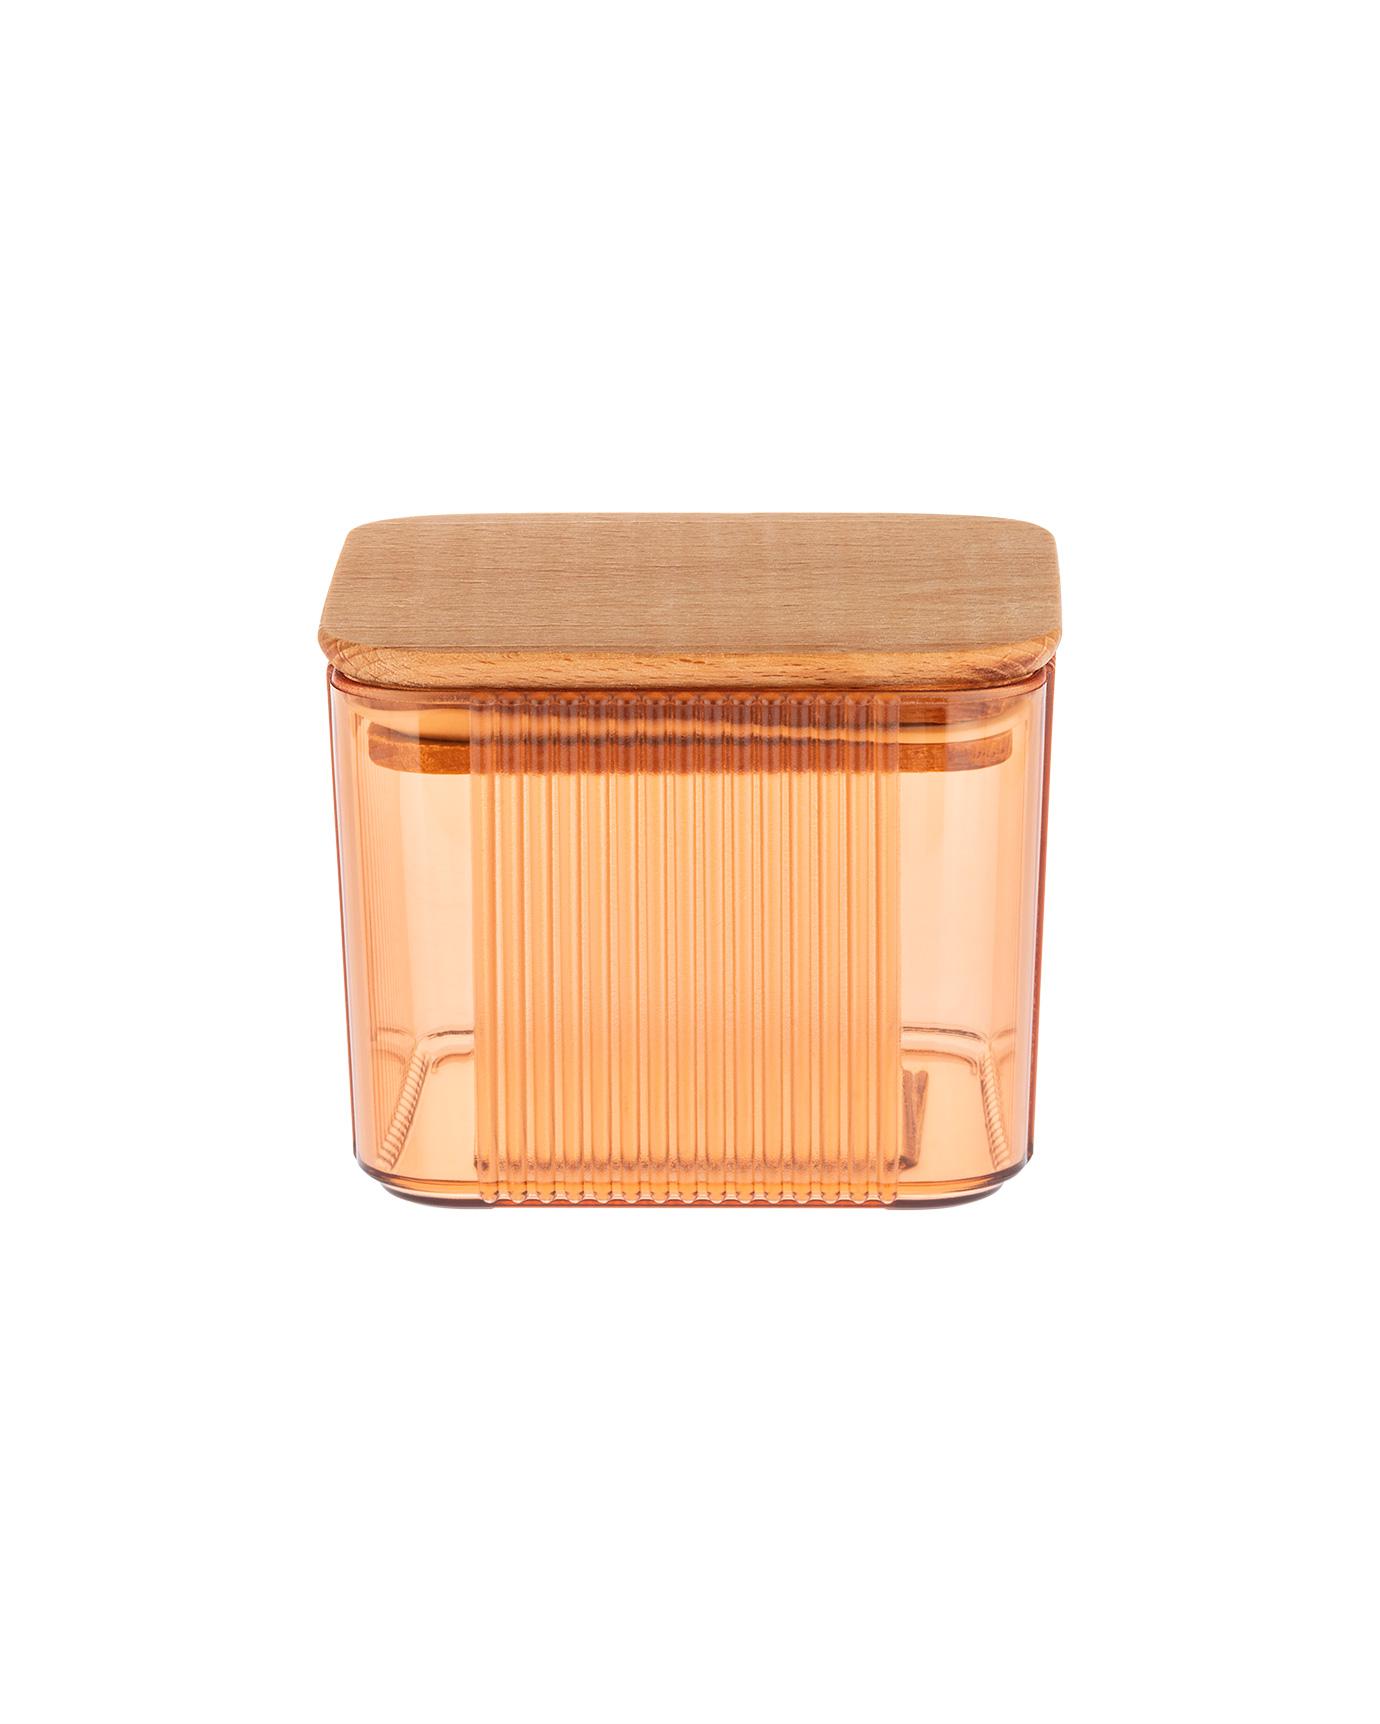 MADAME COCO Renard Kutija za čuvanje hrane, 500ml, 10.5x10.5x8.5cm, Narandžasto